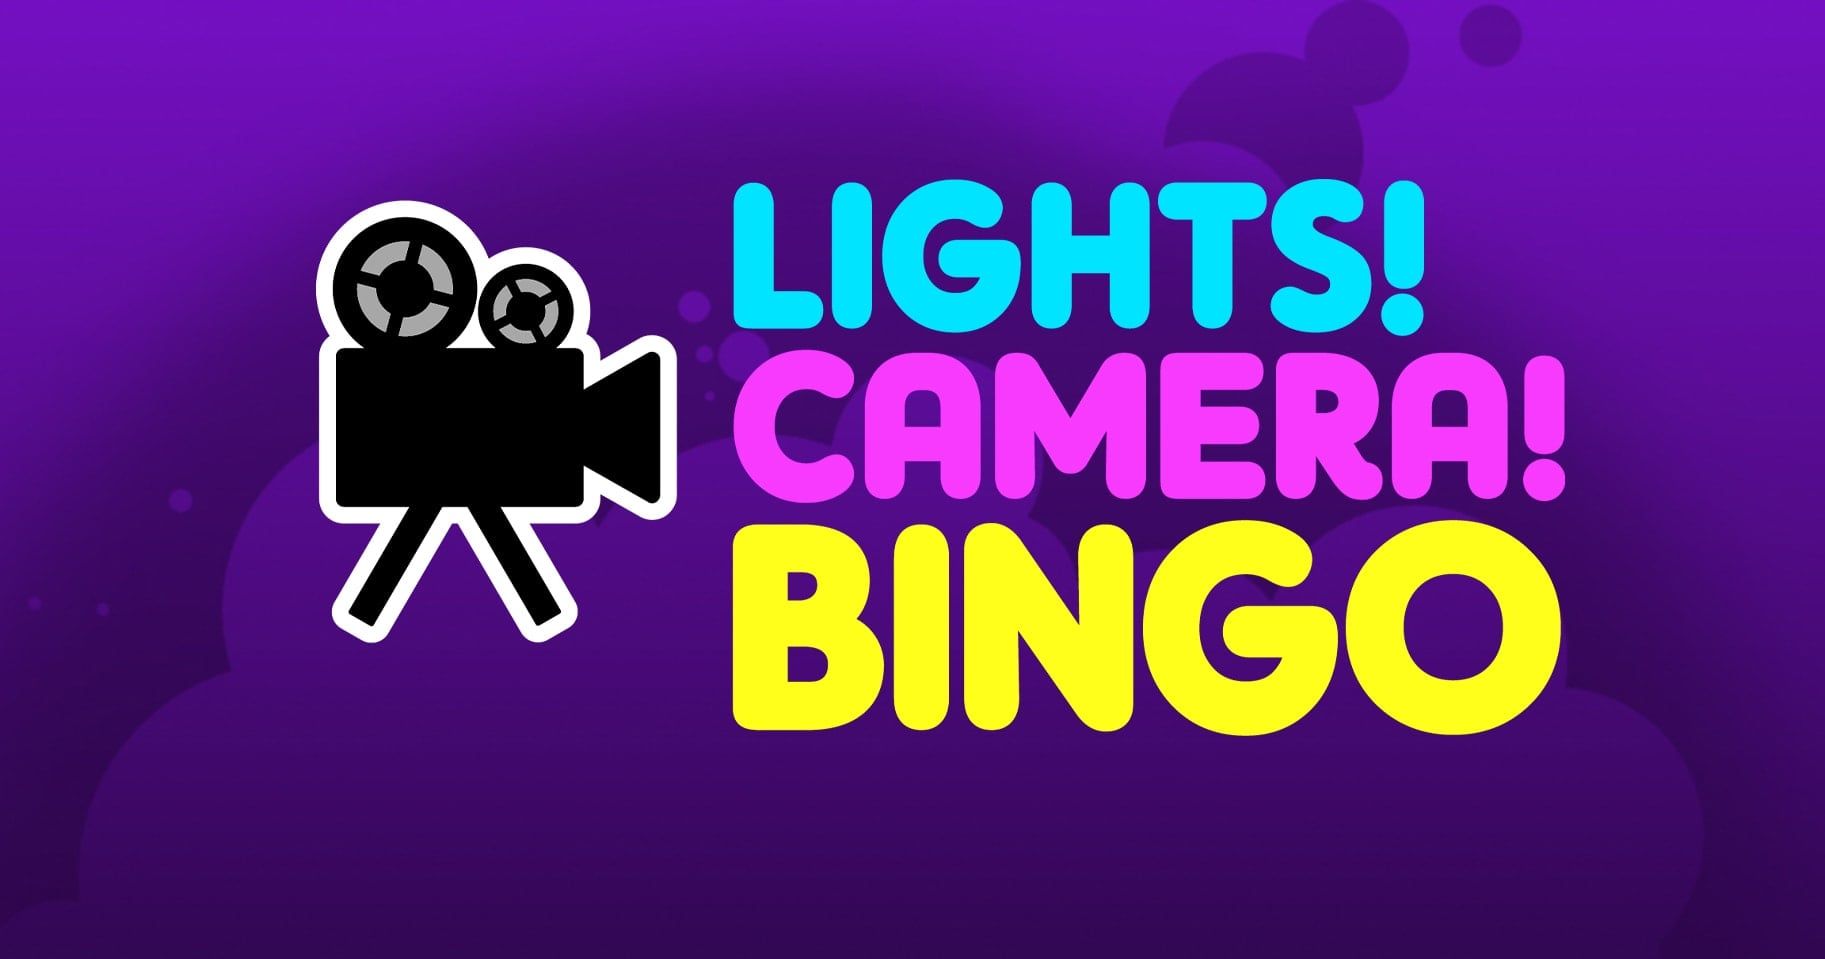 Khuyến mãi Casino Lights Camera Bingo: Nhận ngay 20 lượt quay miễn phí!
